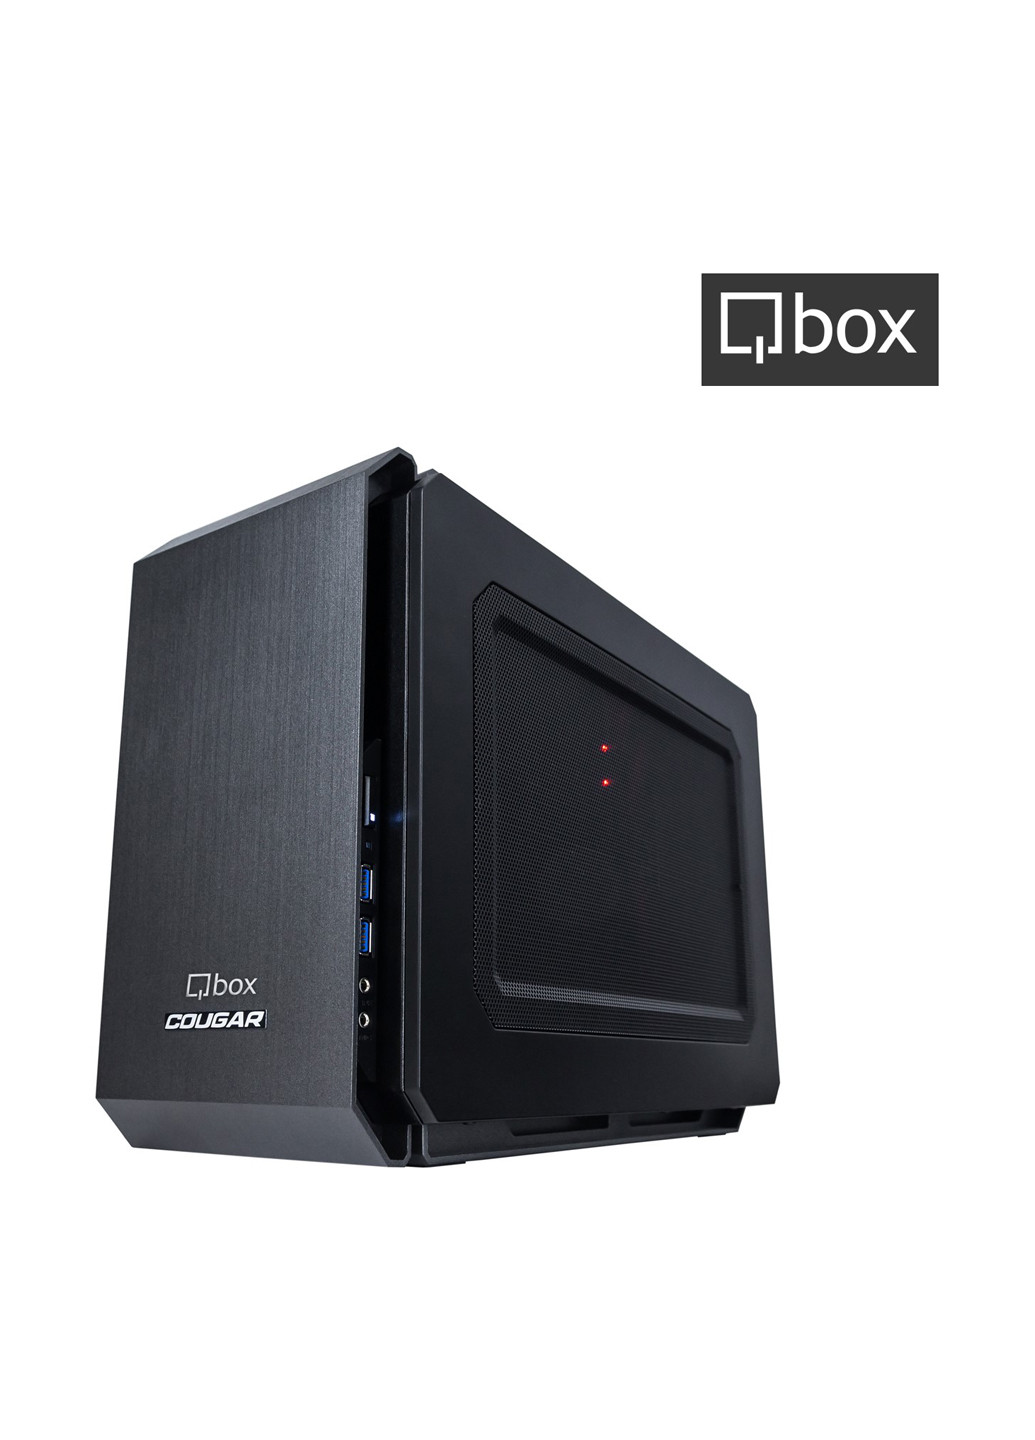 Компьютер I2618 Qbox qbox i2618 (131396731)